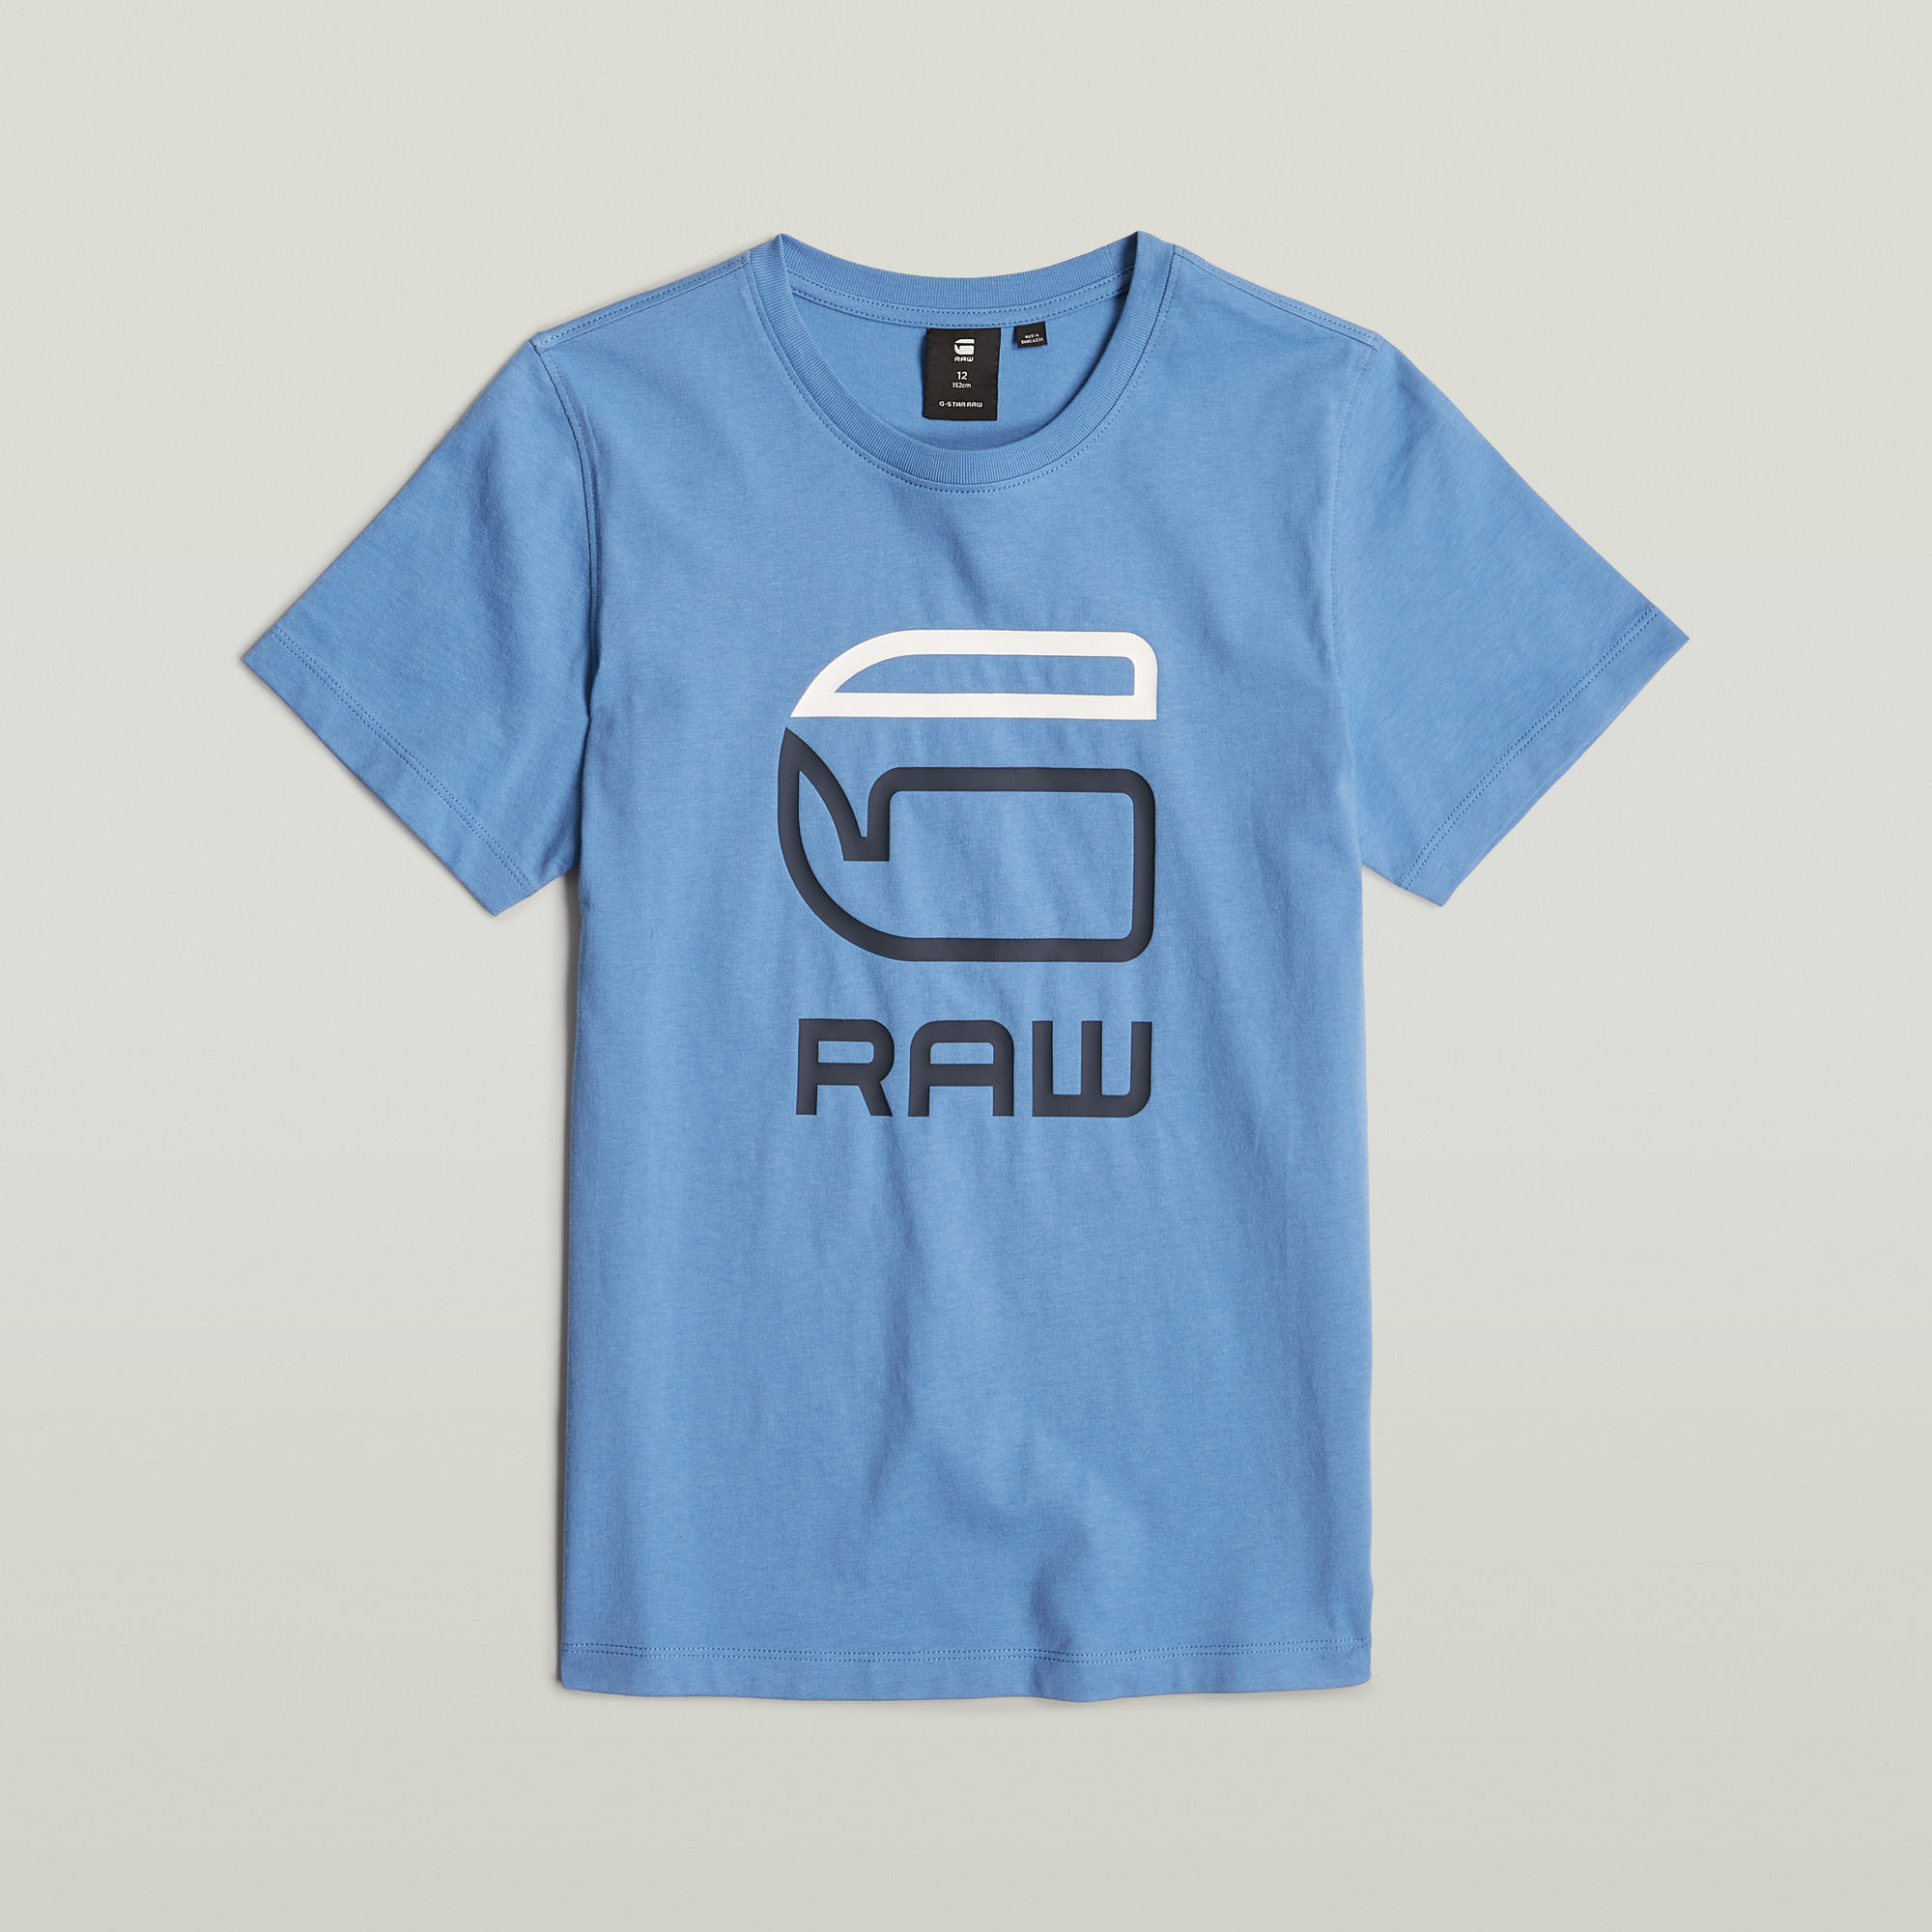 G-Star RAW Kids T-Shirt Regular - Midden blauw - jongens